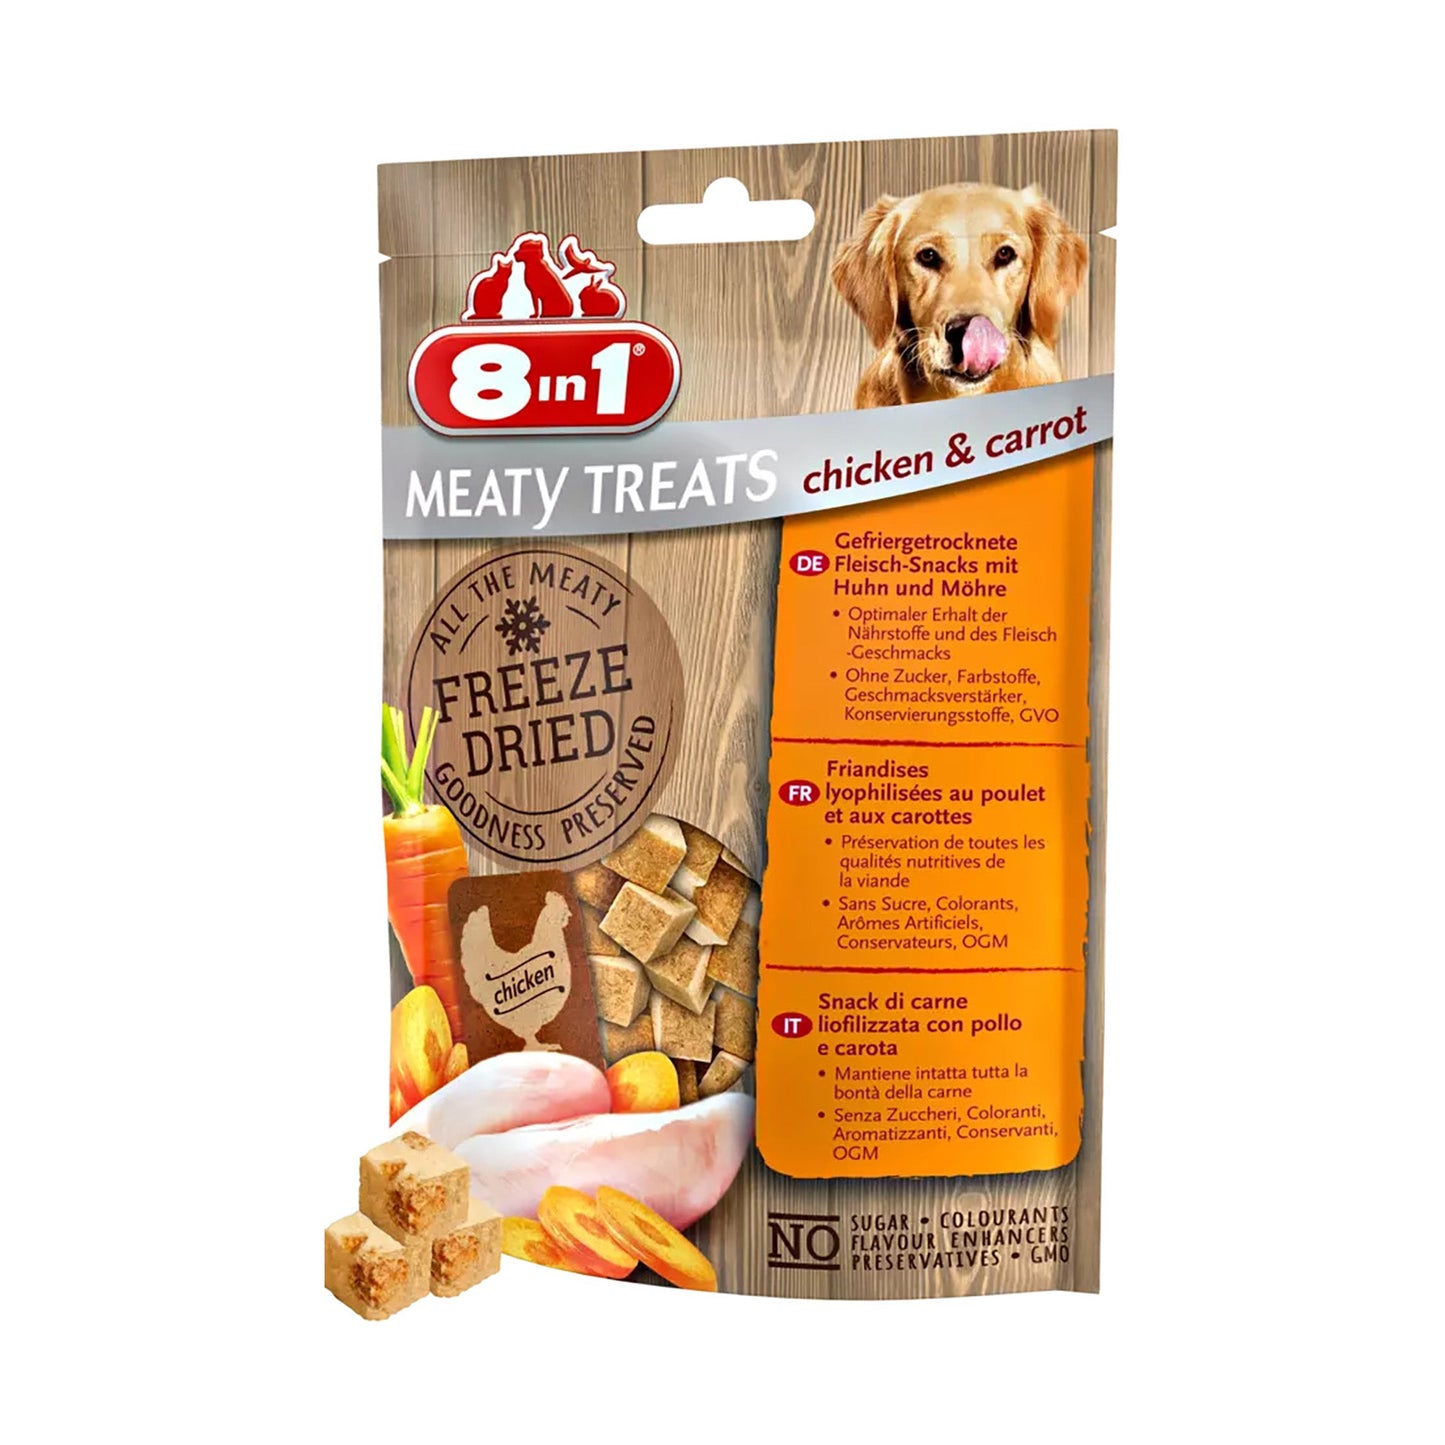 8in1 Meaty Treats Freeze Dried meaty snacks with chicken & carrot - Pet Merit Store8in1 Meaty Treats Freeze Dried meaty snacks with chicken & carrot